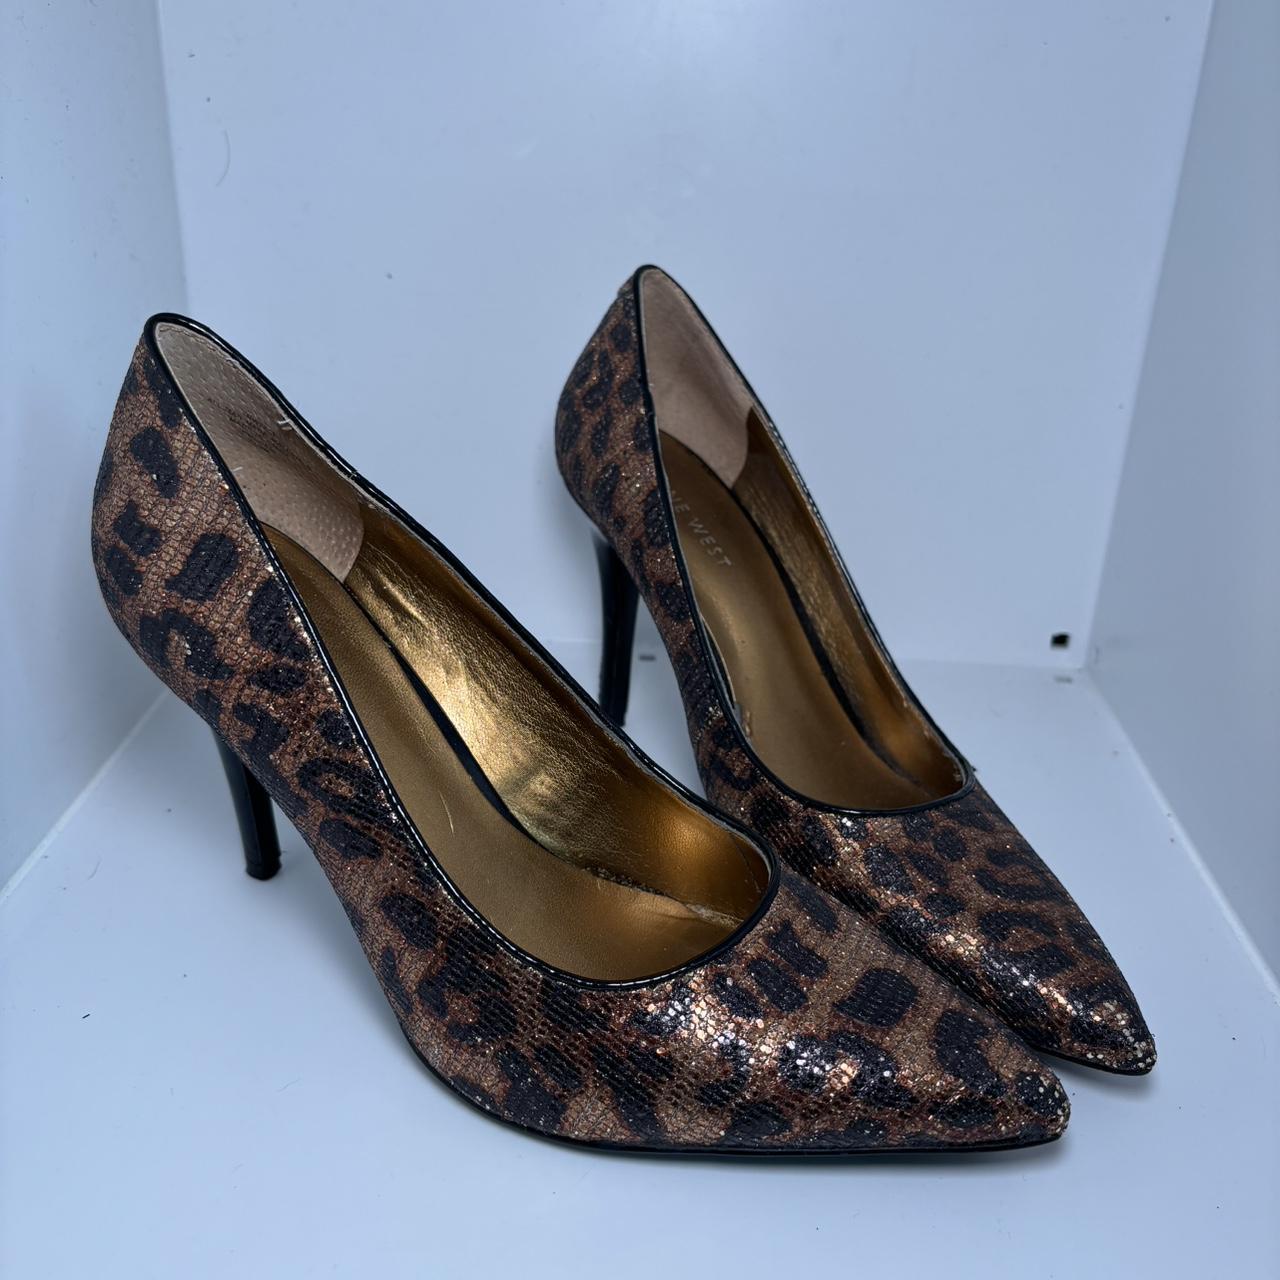 Nine West leopard heels - Depop